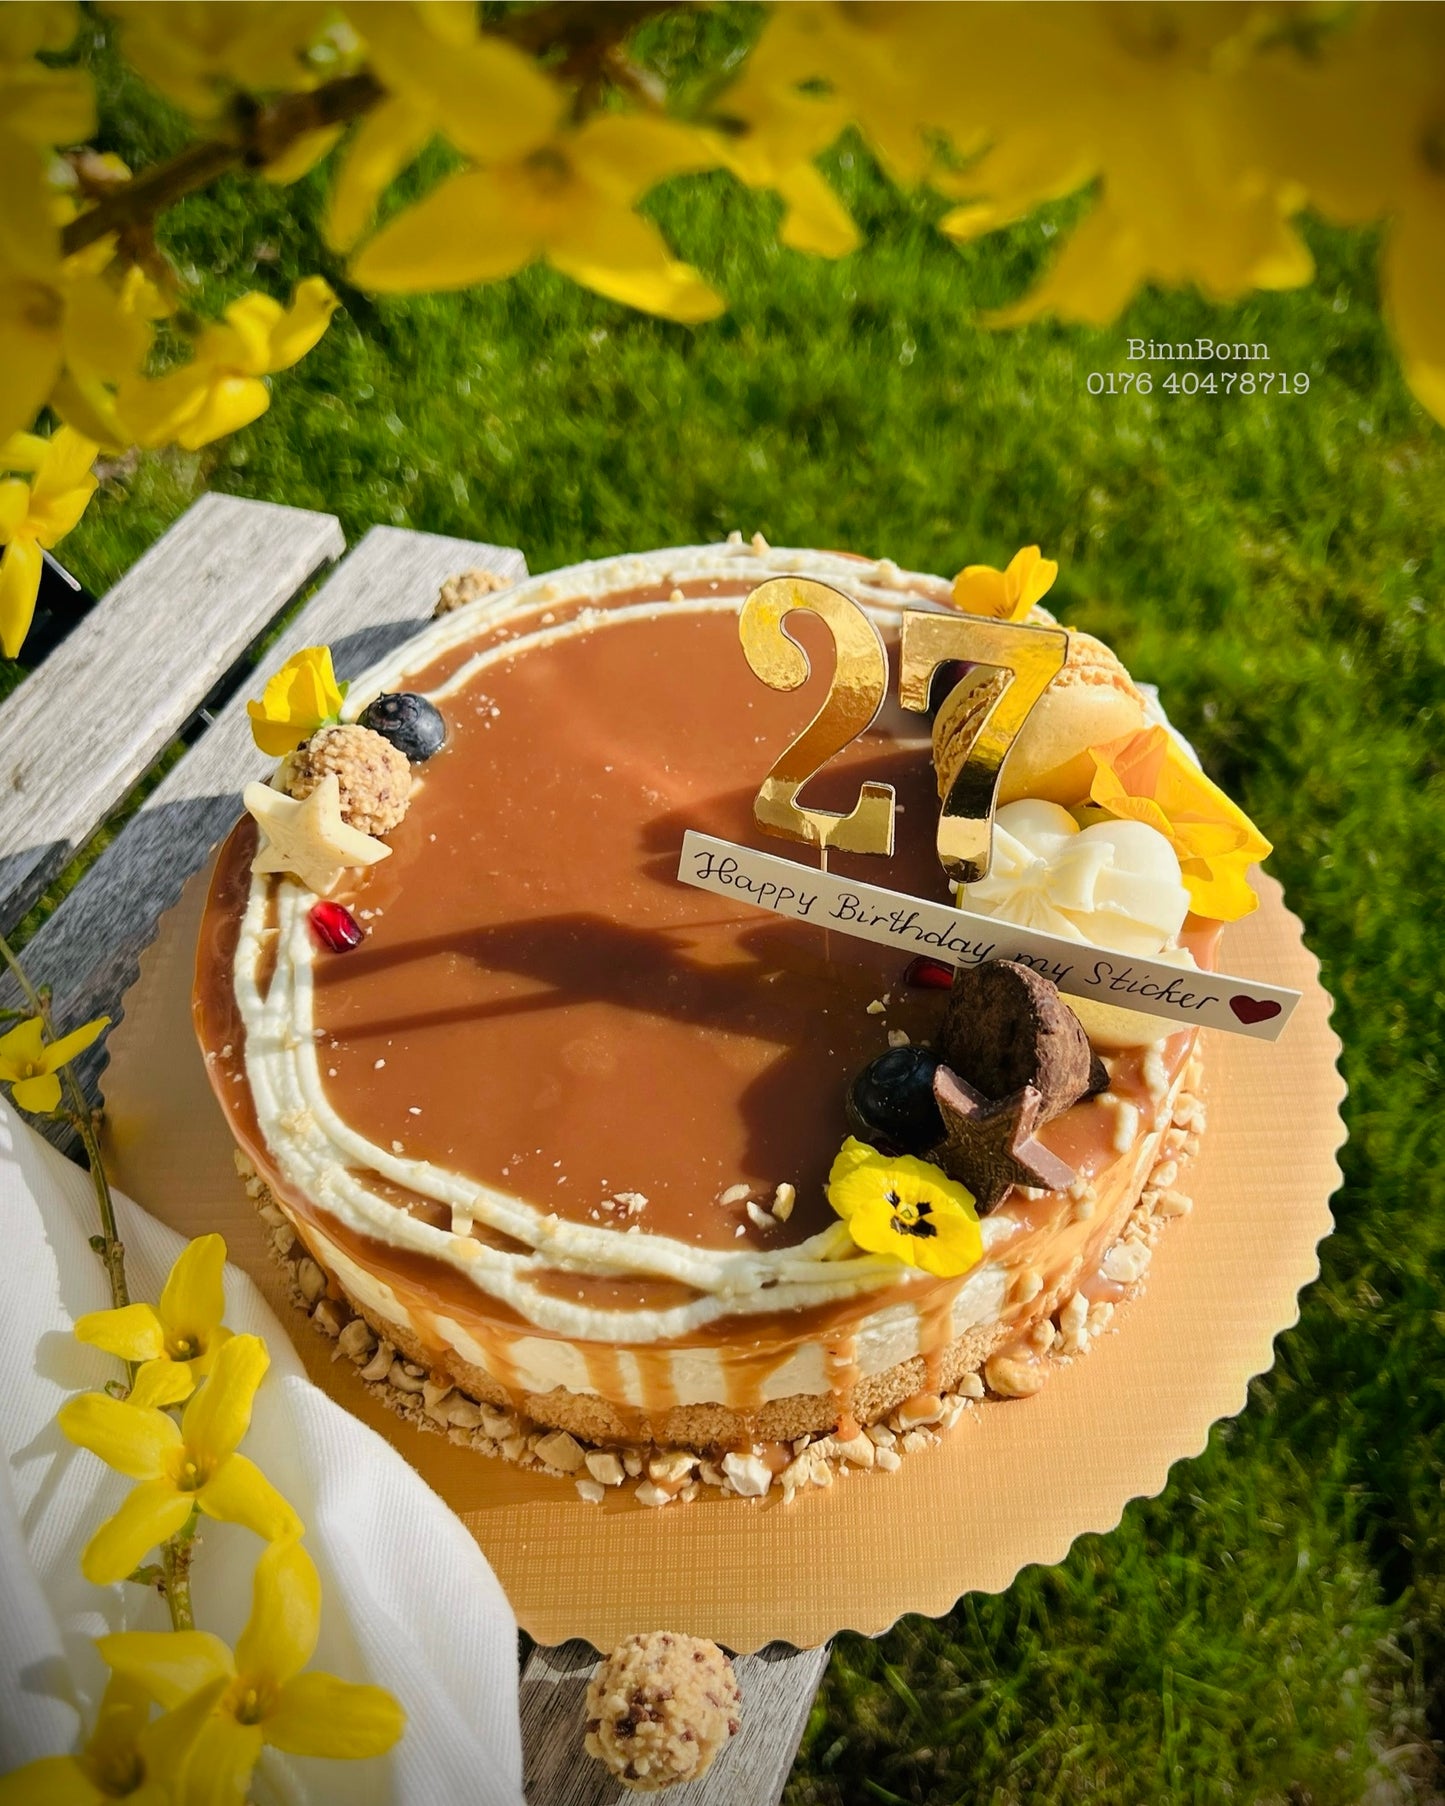 49. Torte "Love and Cheesecake" mit salziger Karamellsauce und Cashew 23 cm